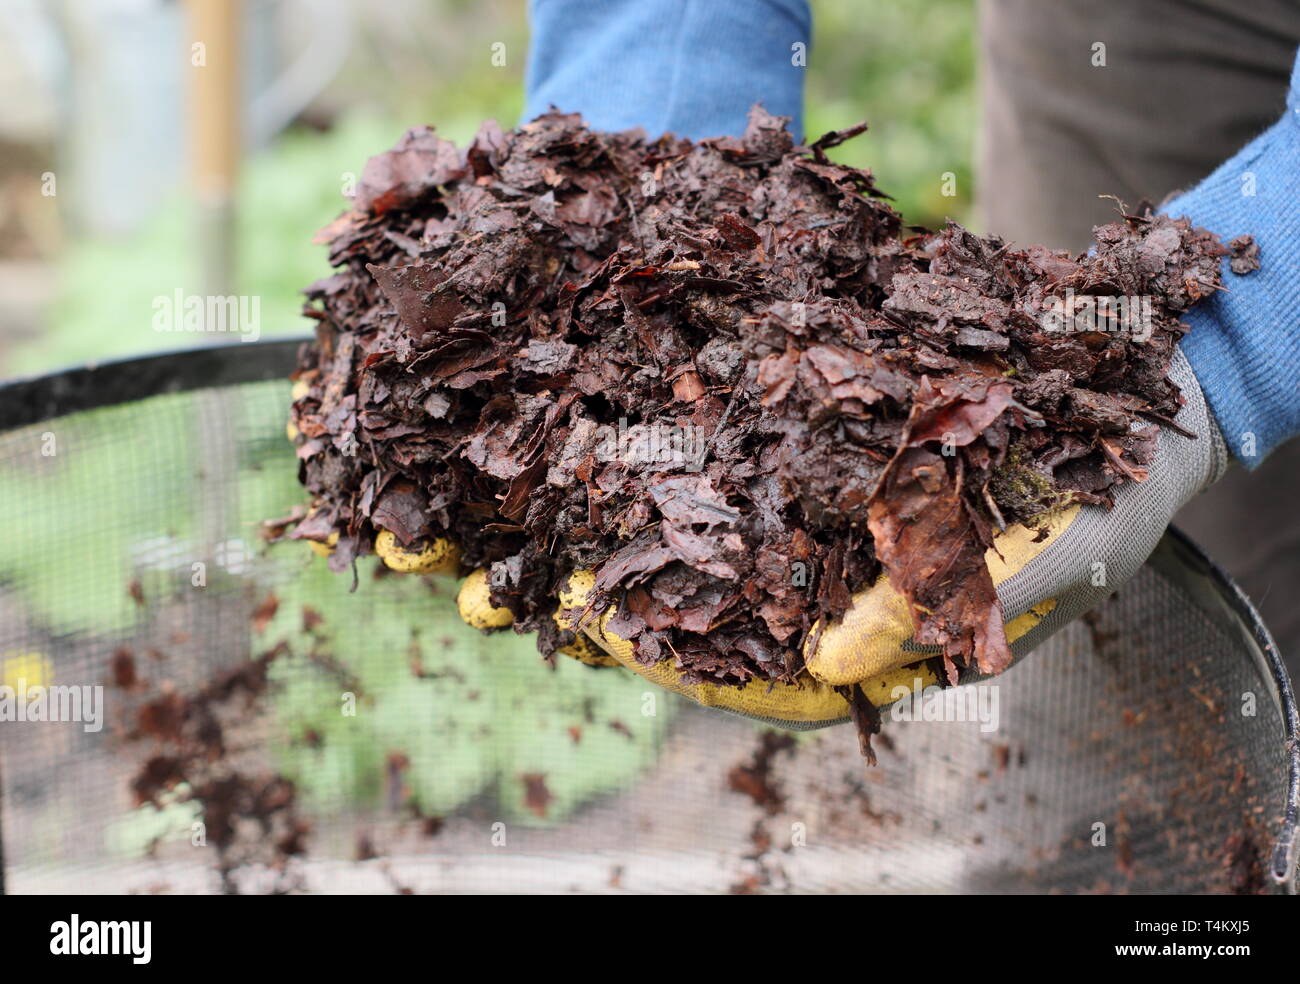 Selbstgemachte Blattform, die aus einem Blattkäfig gehoben wurde und als Mulch im Garten verwendet werden kann. Regenerative Gartenarbeit. Stockfoto